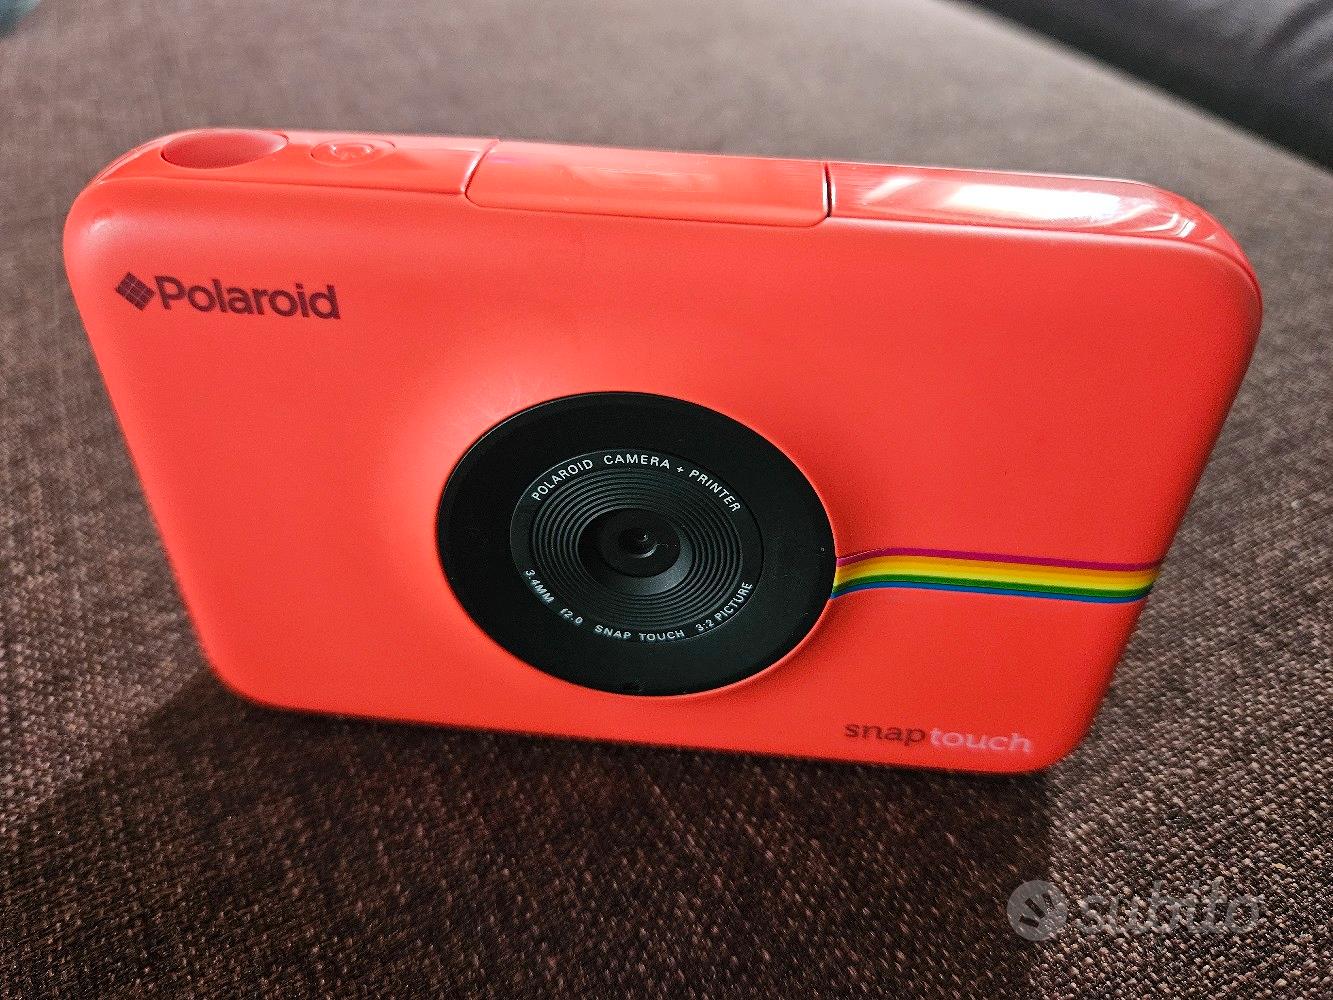 Polaroid snap touch non funzionante - Fotografia In vendita a Aosta